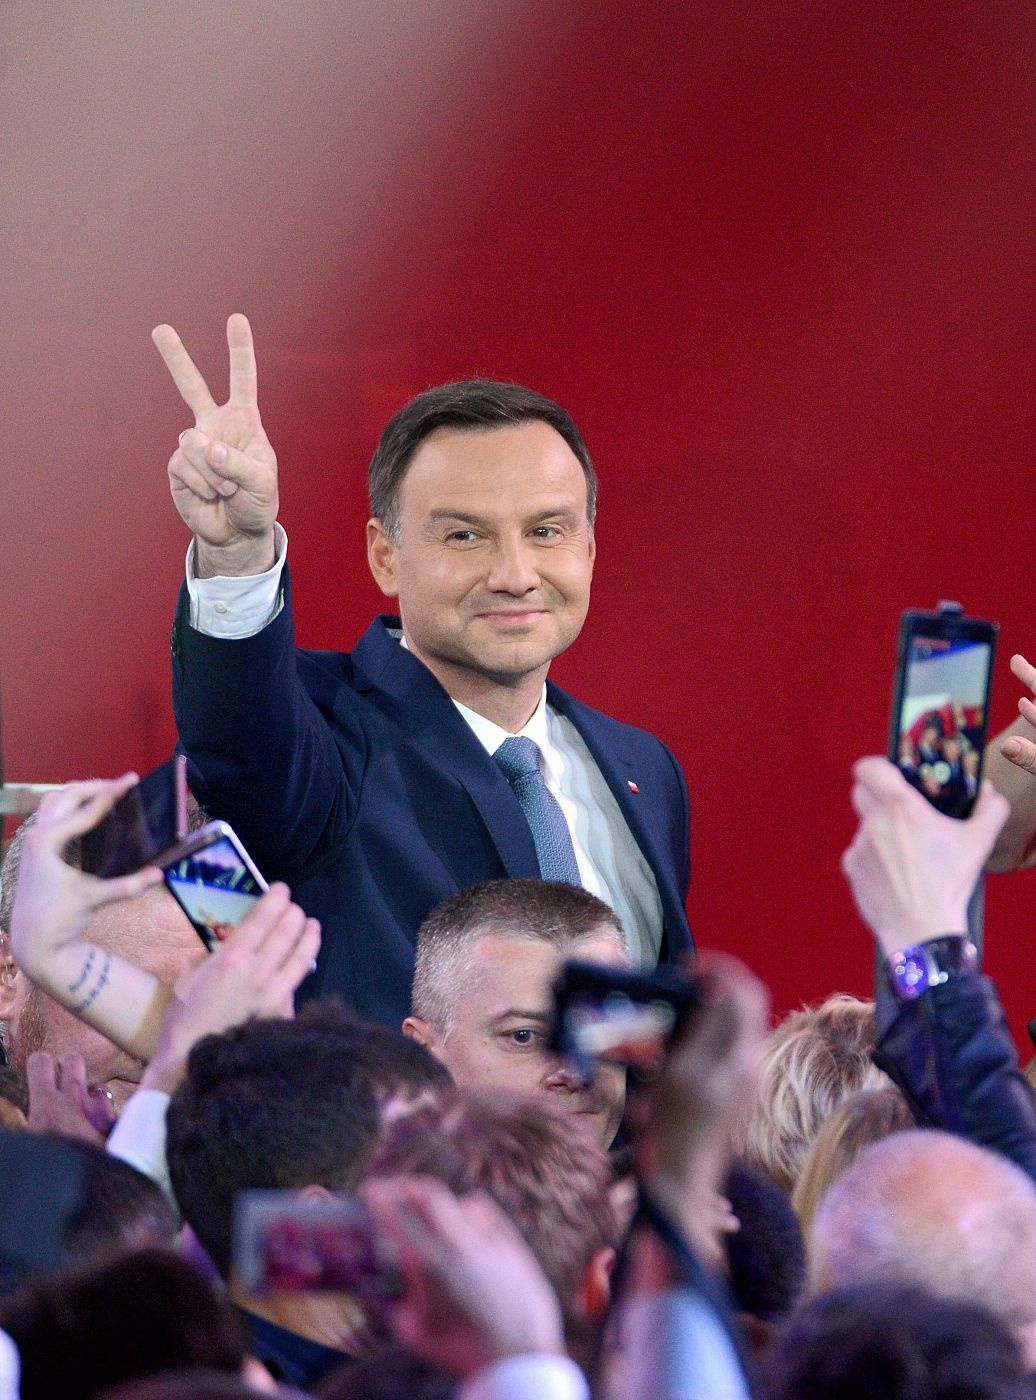 El candidato a la presidencia de Polonia, Andrzej Duda, celebra los primeros sondeos que le proclaman presidente del país.